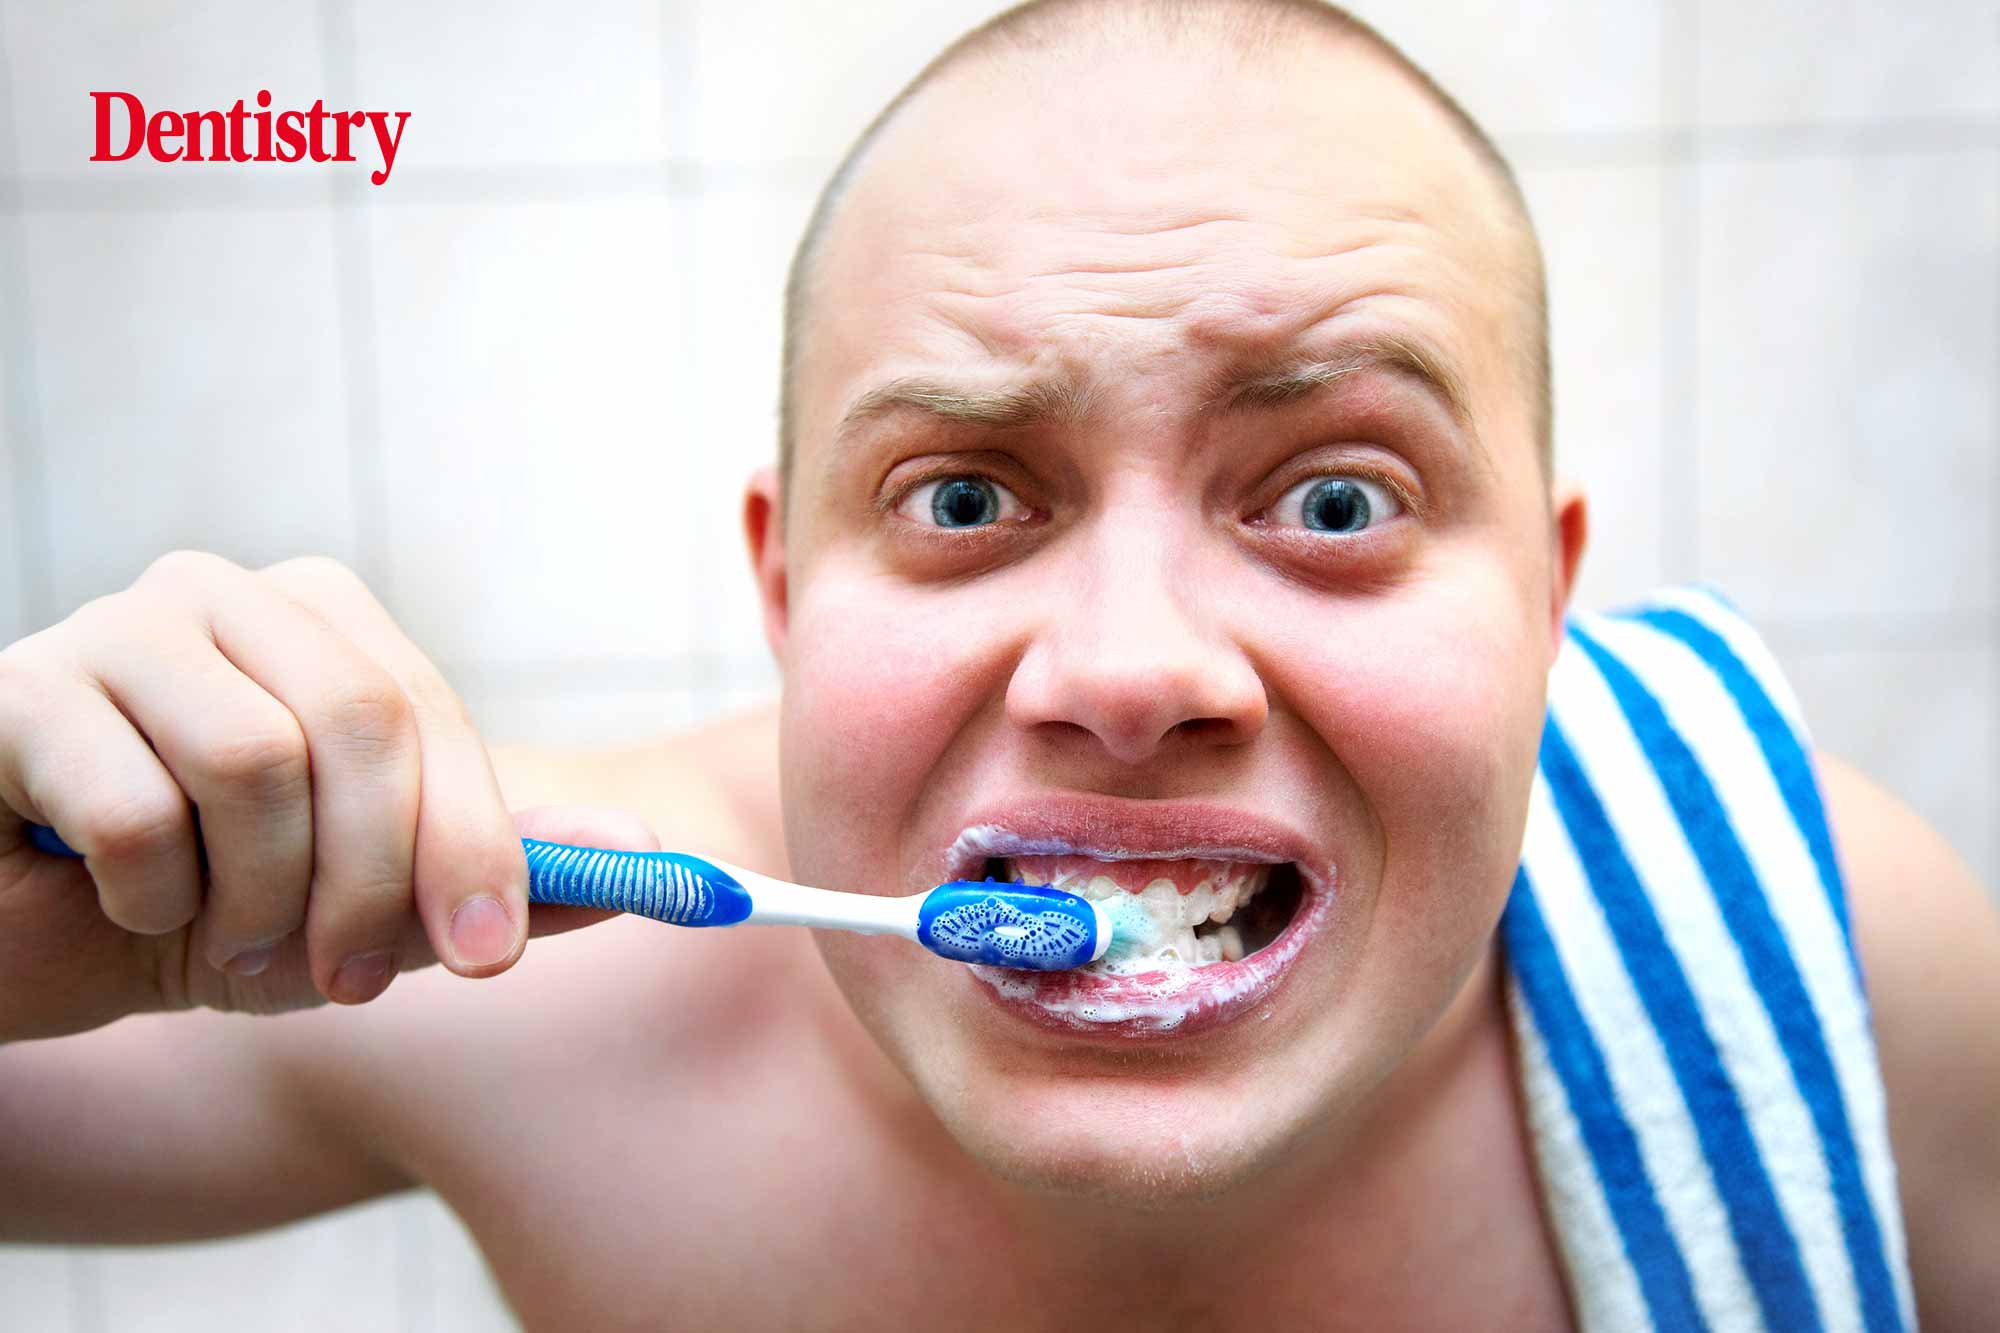 Зуб после душа. Чистим зубы!. Чистые зубы. Парень с зубной щеткой. Человек чистит зубы.